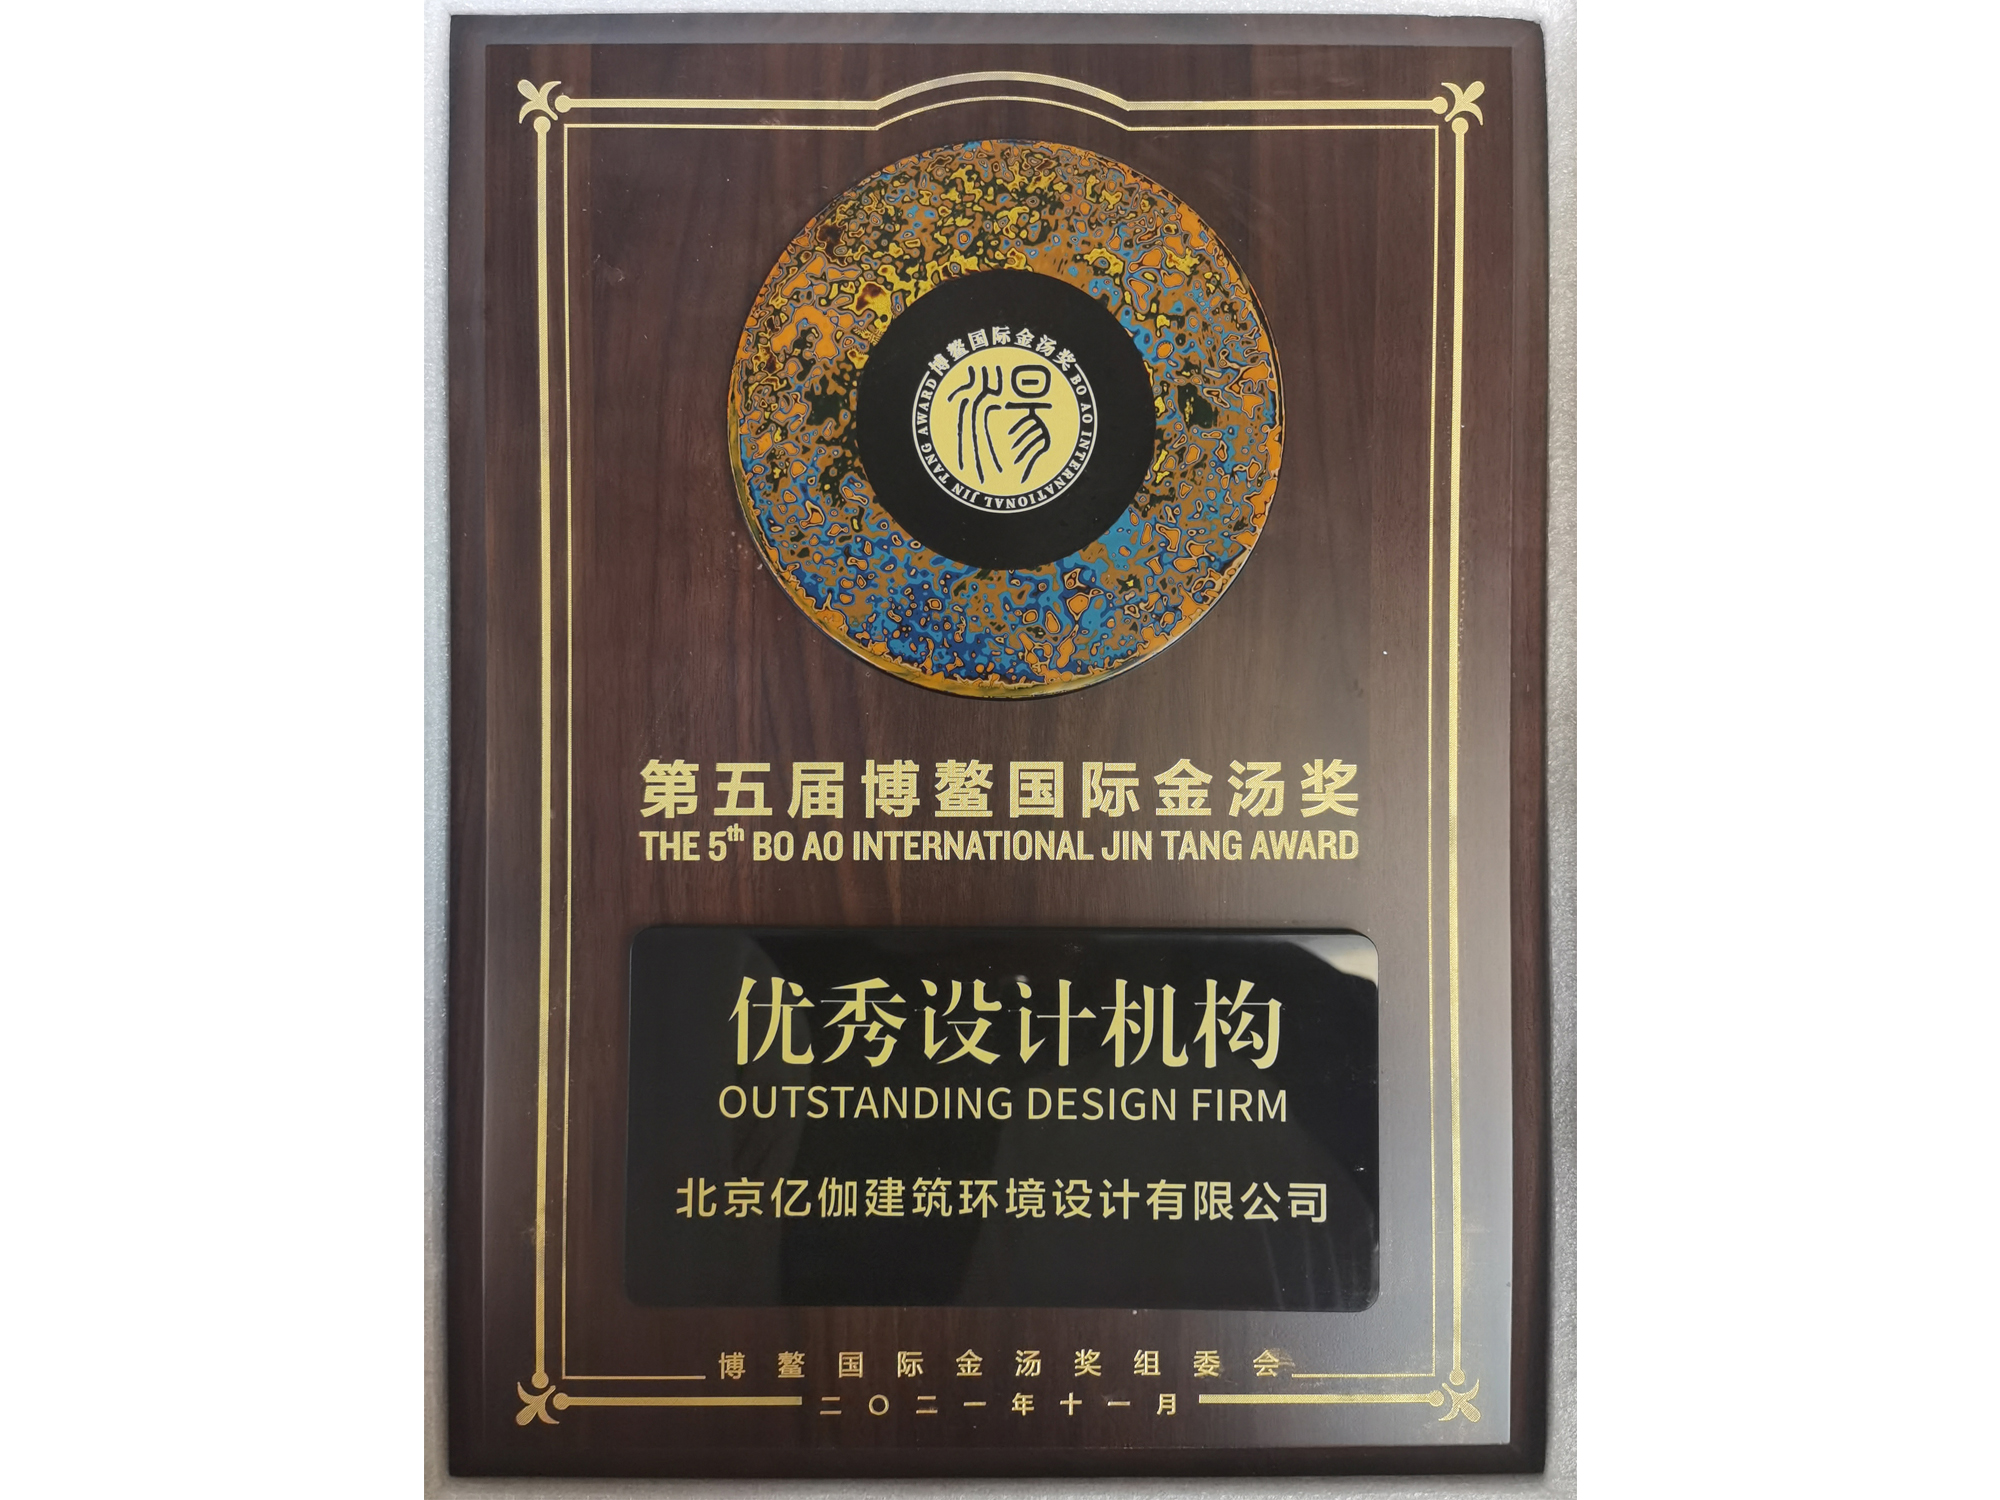 第五届博鳌国际金汤奖“优秀设计机构”